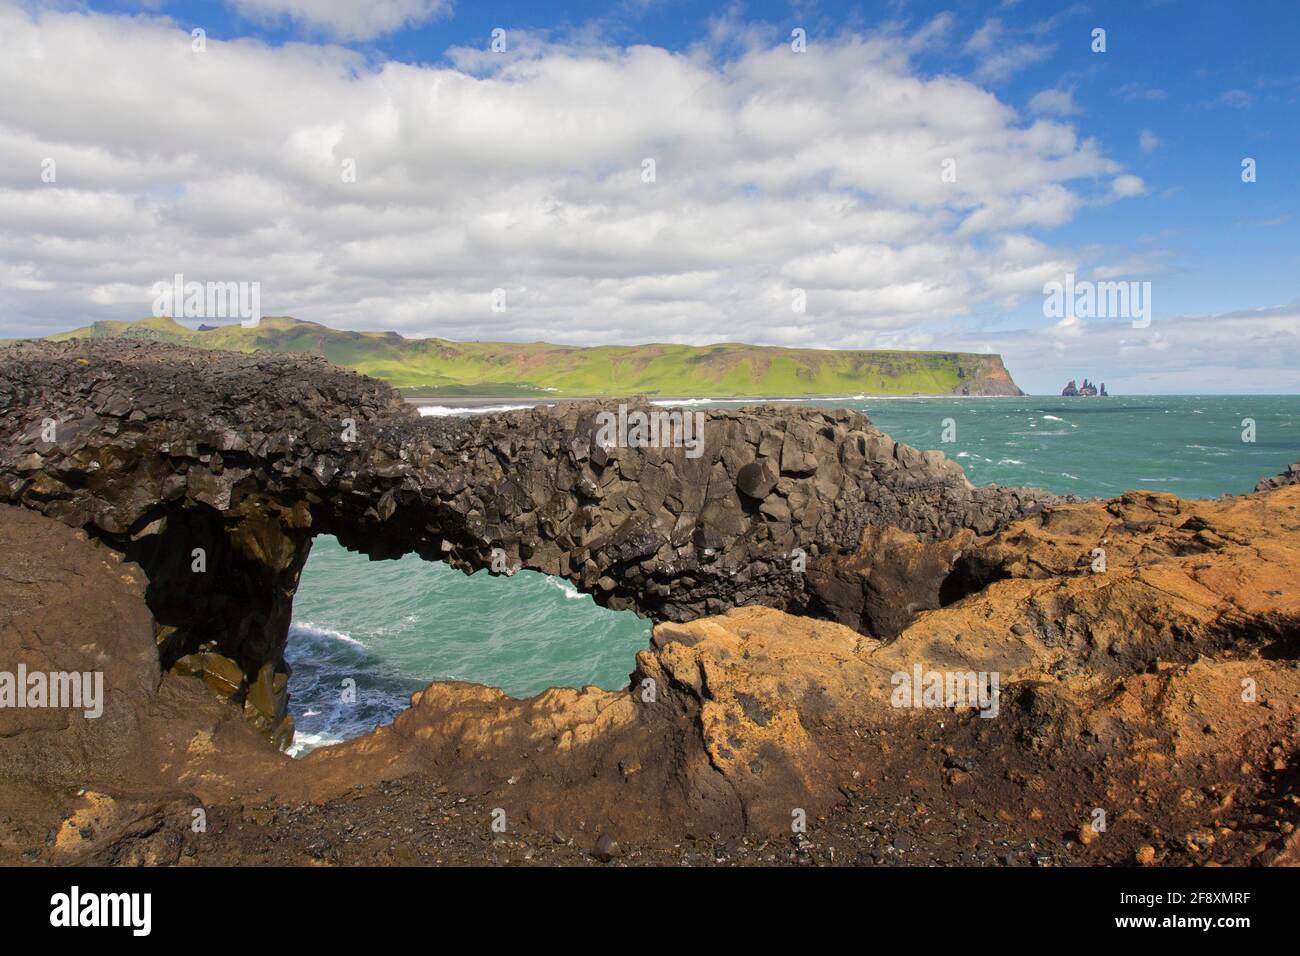 Natural arch, eroded black basalt rock formation at Cape Dyrhólaey / Cape Portland near Vík í Mýrdal, Iceland Stock Photo